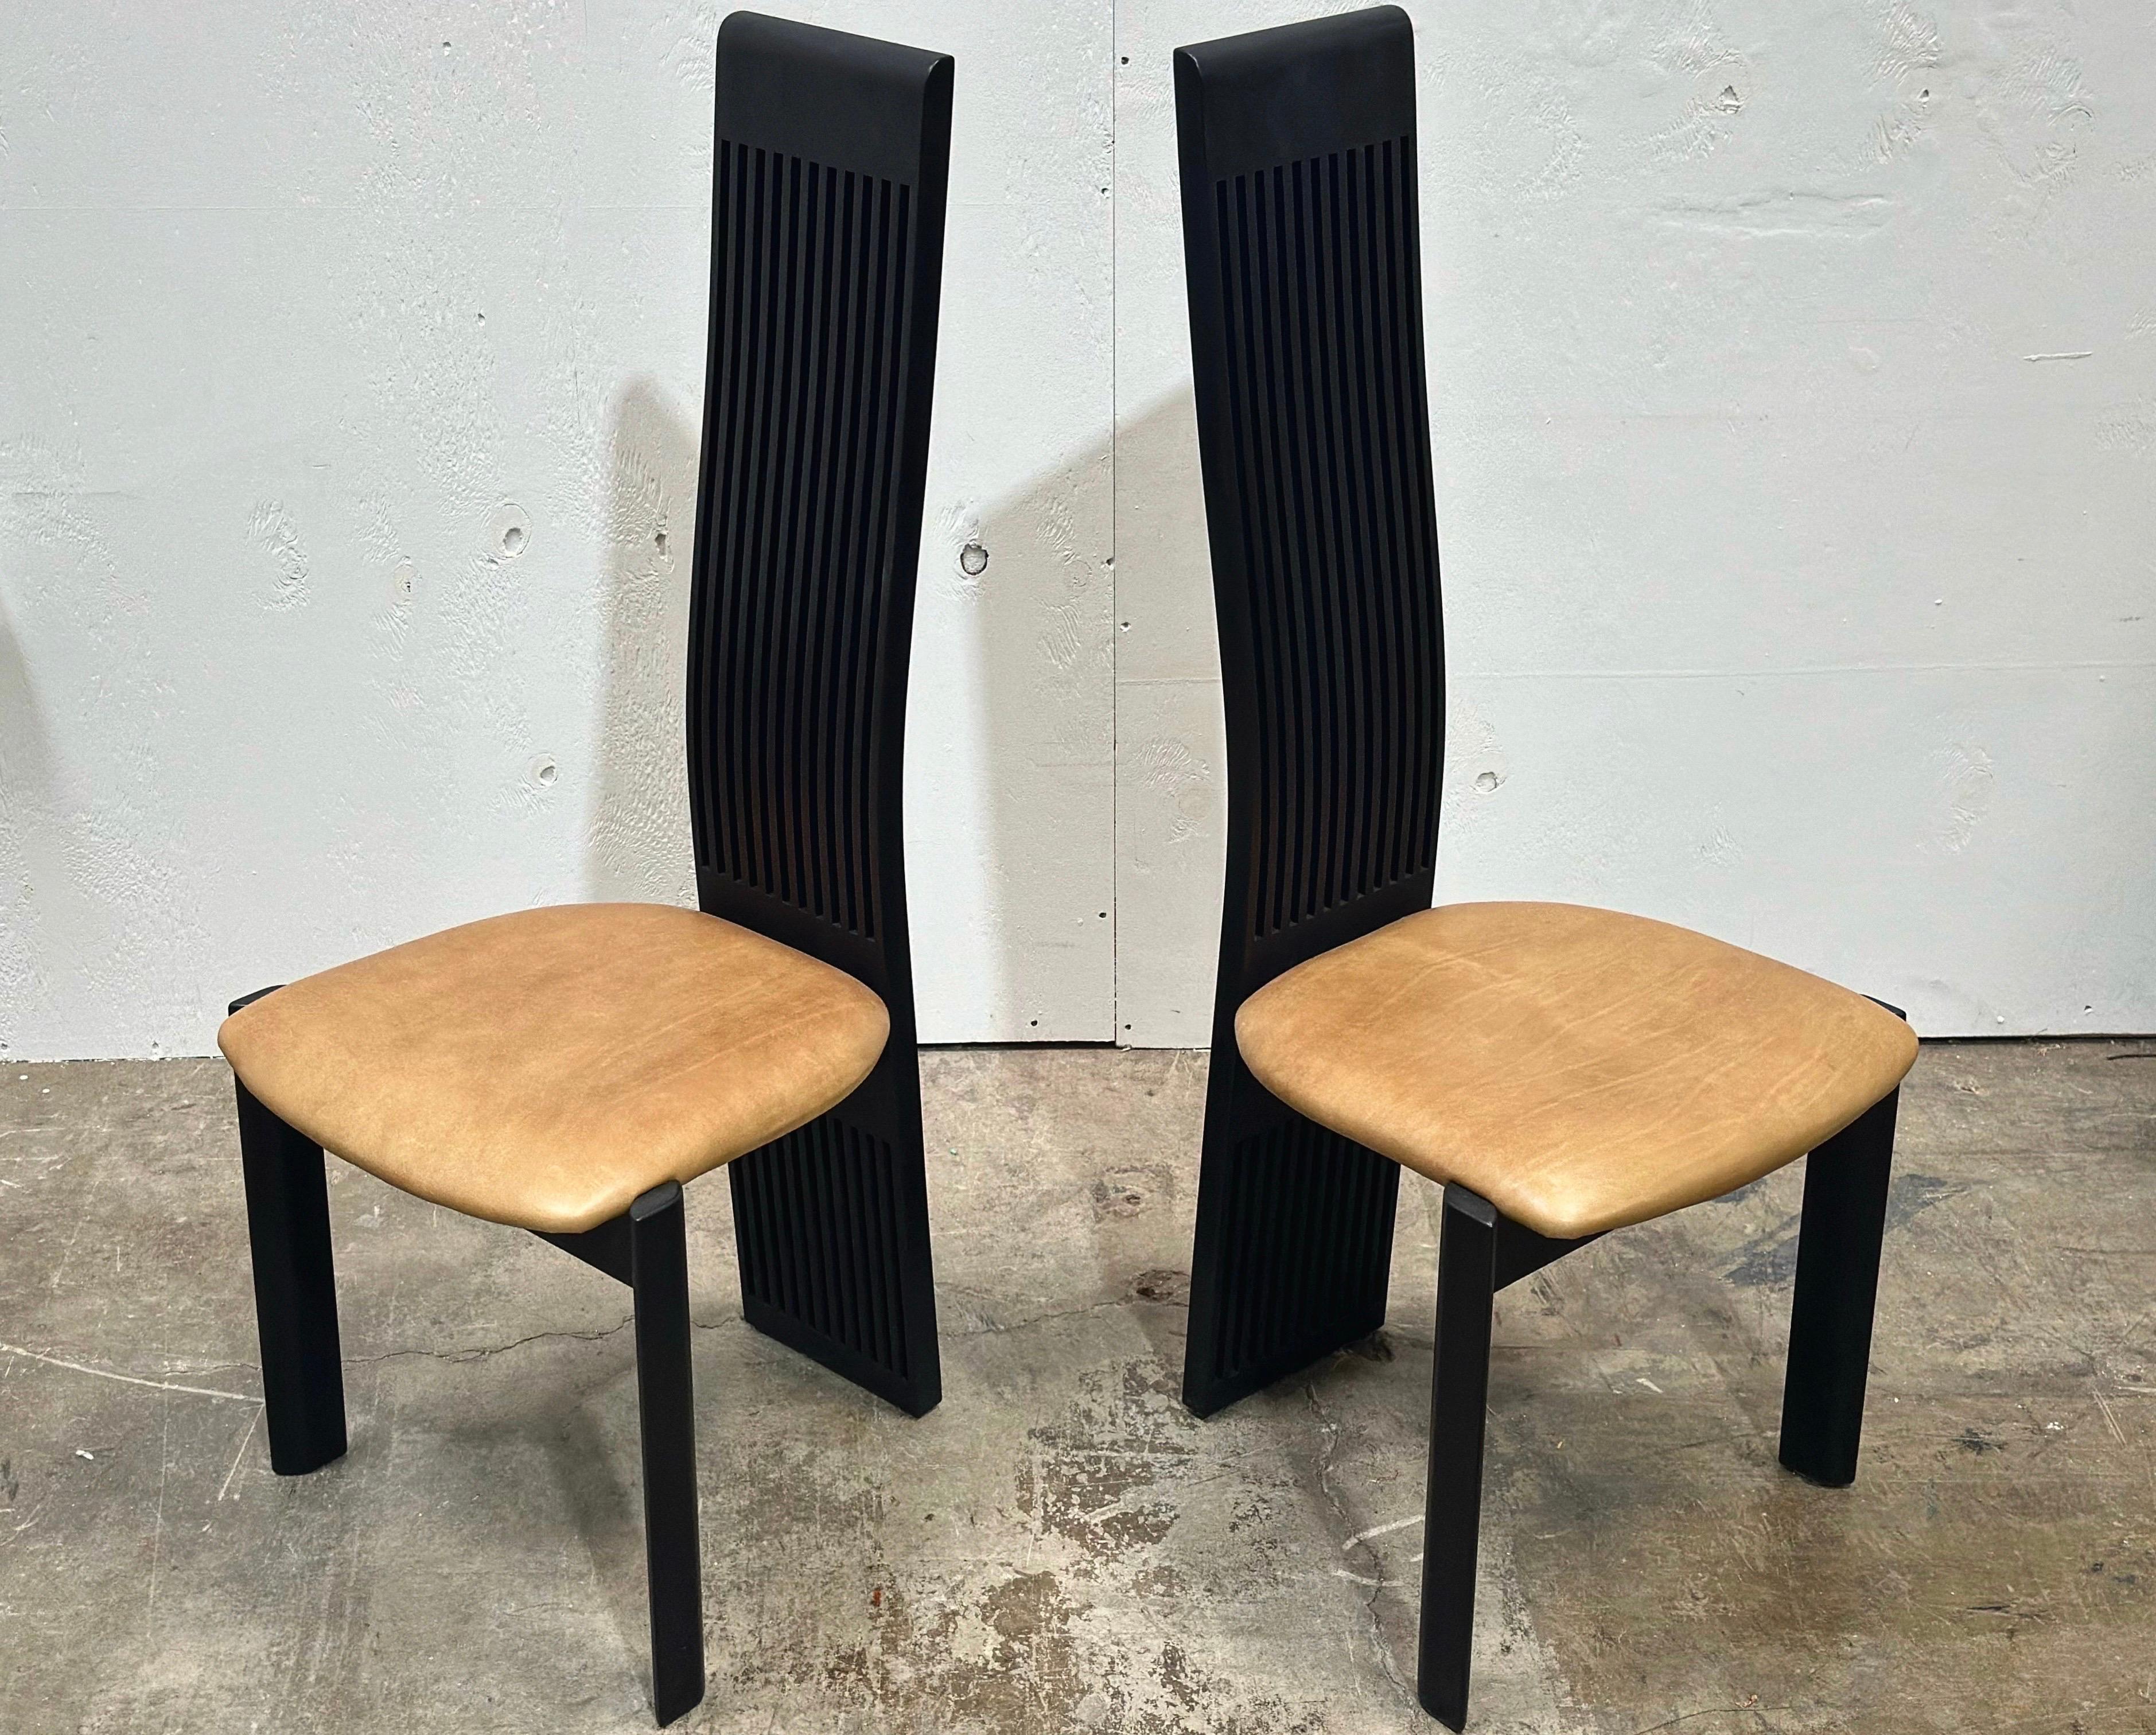 Satz von acht (8) postmodernen Pietro Costantini Esszimmerstühlen mit hoher Rückenlehne, übertriebenen Lattenrosten und Ledersitzen.

Das Gestell ist aus massivem Buchenholz gefertigt und schwarz seidenmatt lackiert, die Sitze sind mit einem